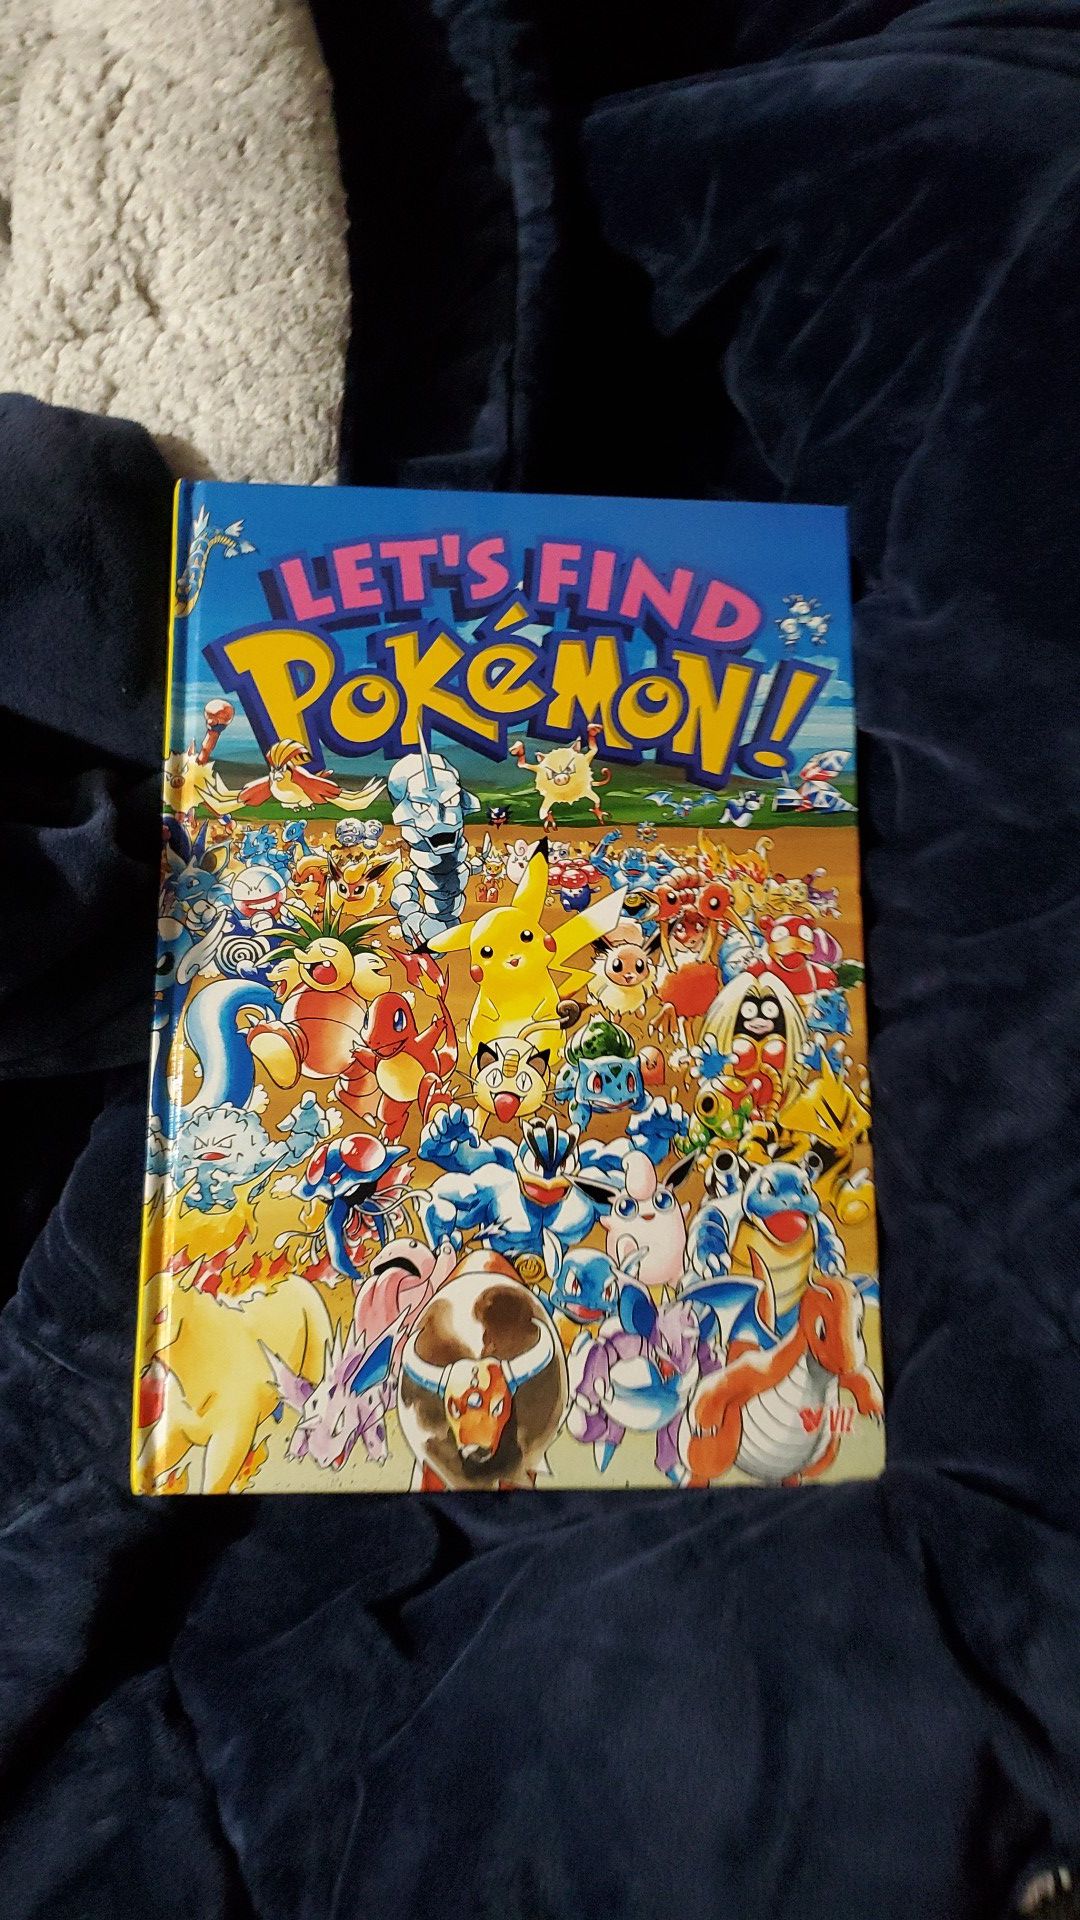 Collectable pokemon book